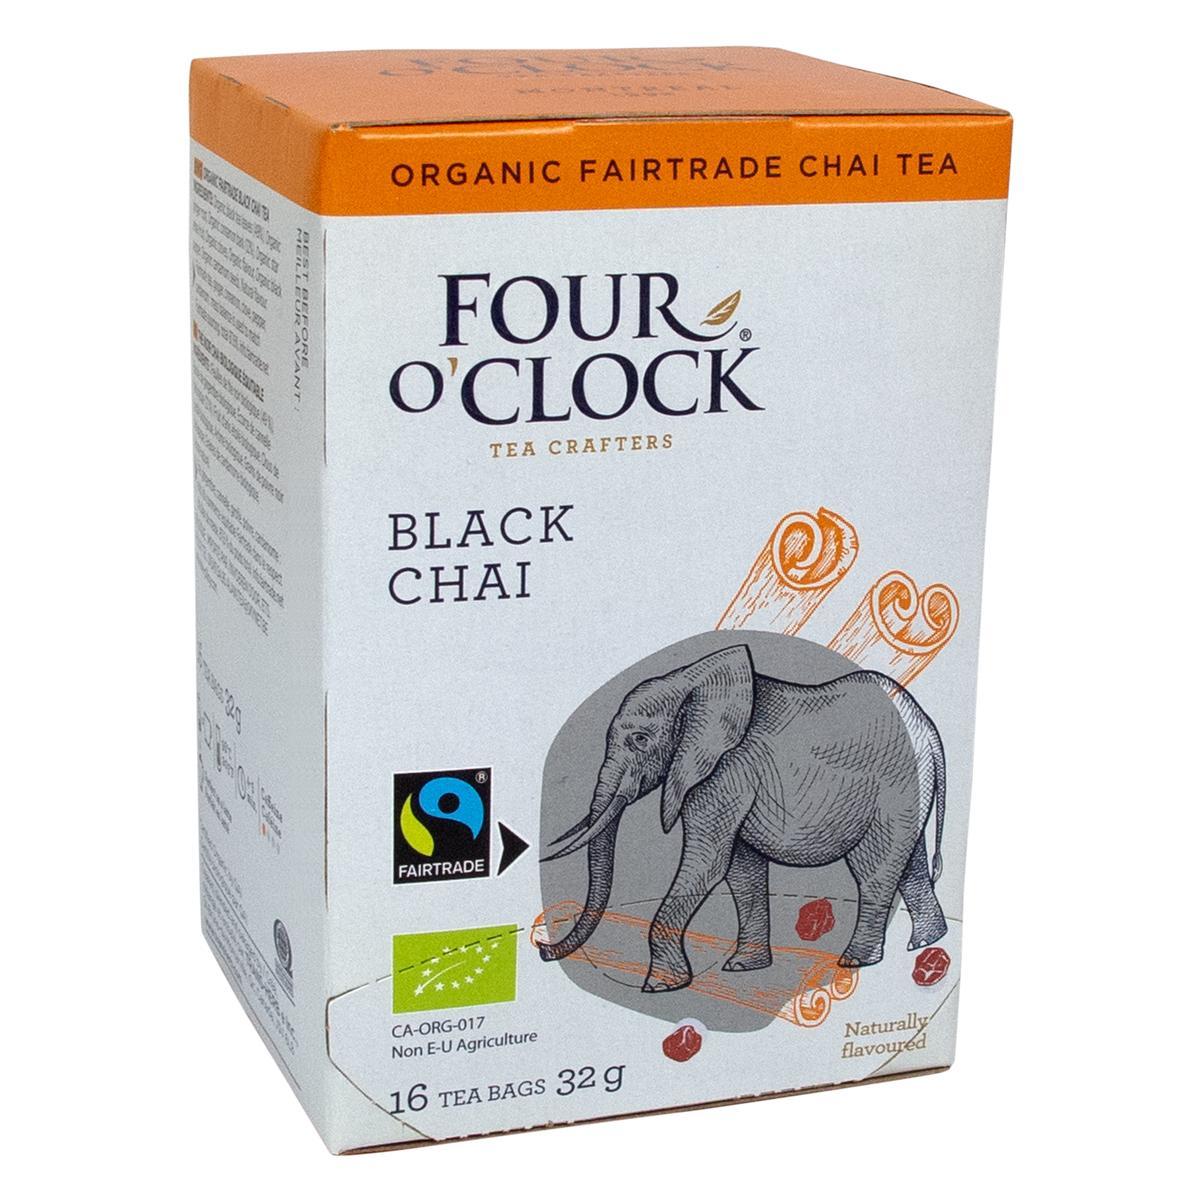 Four O’Clock's Four O'Clock BLACK CHAI '